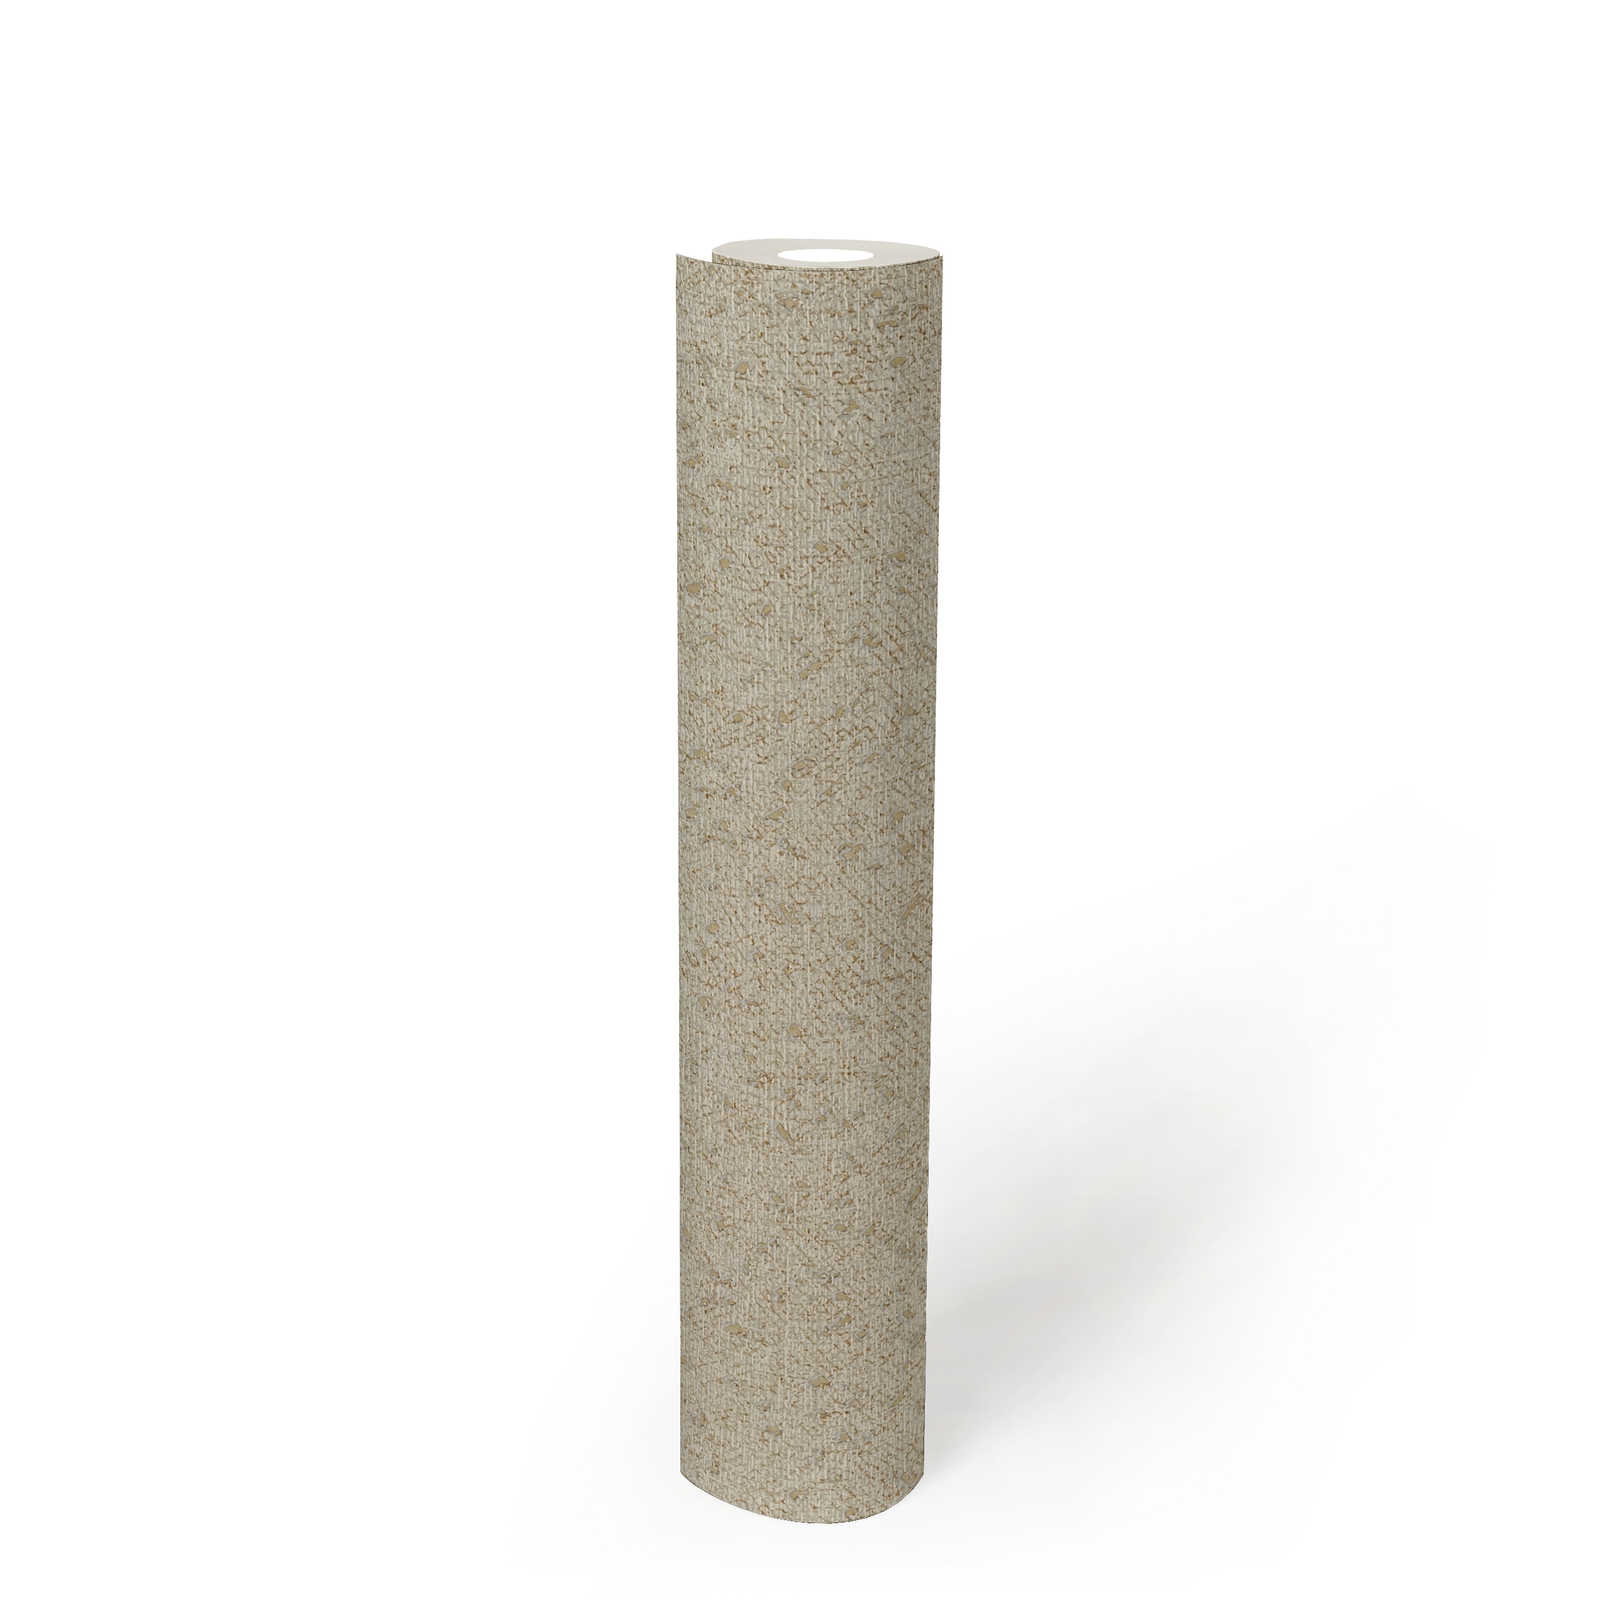             Papel pintado con estructura textil y acento metálico - beige, gris
        